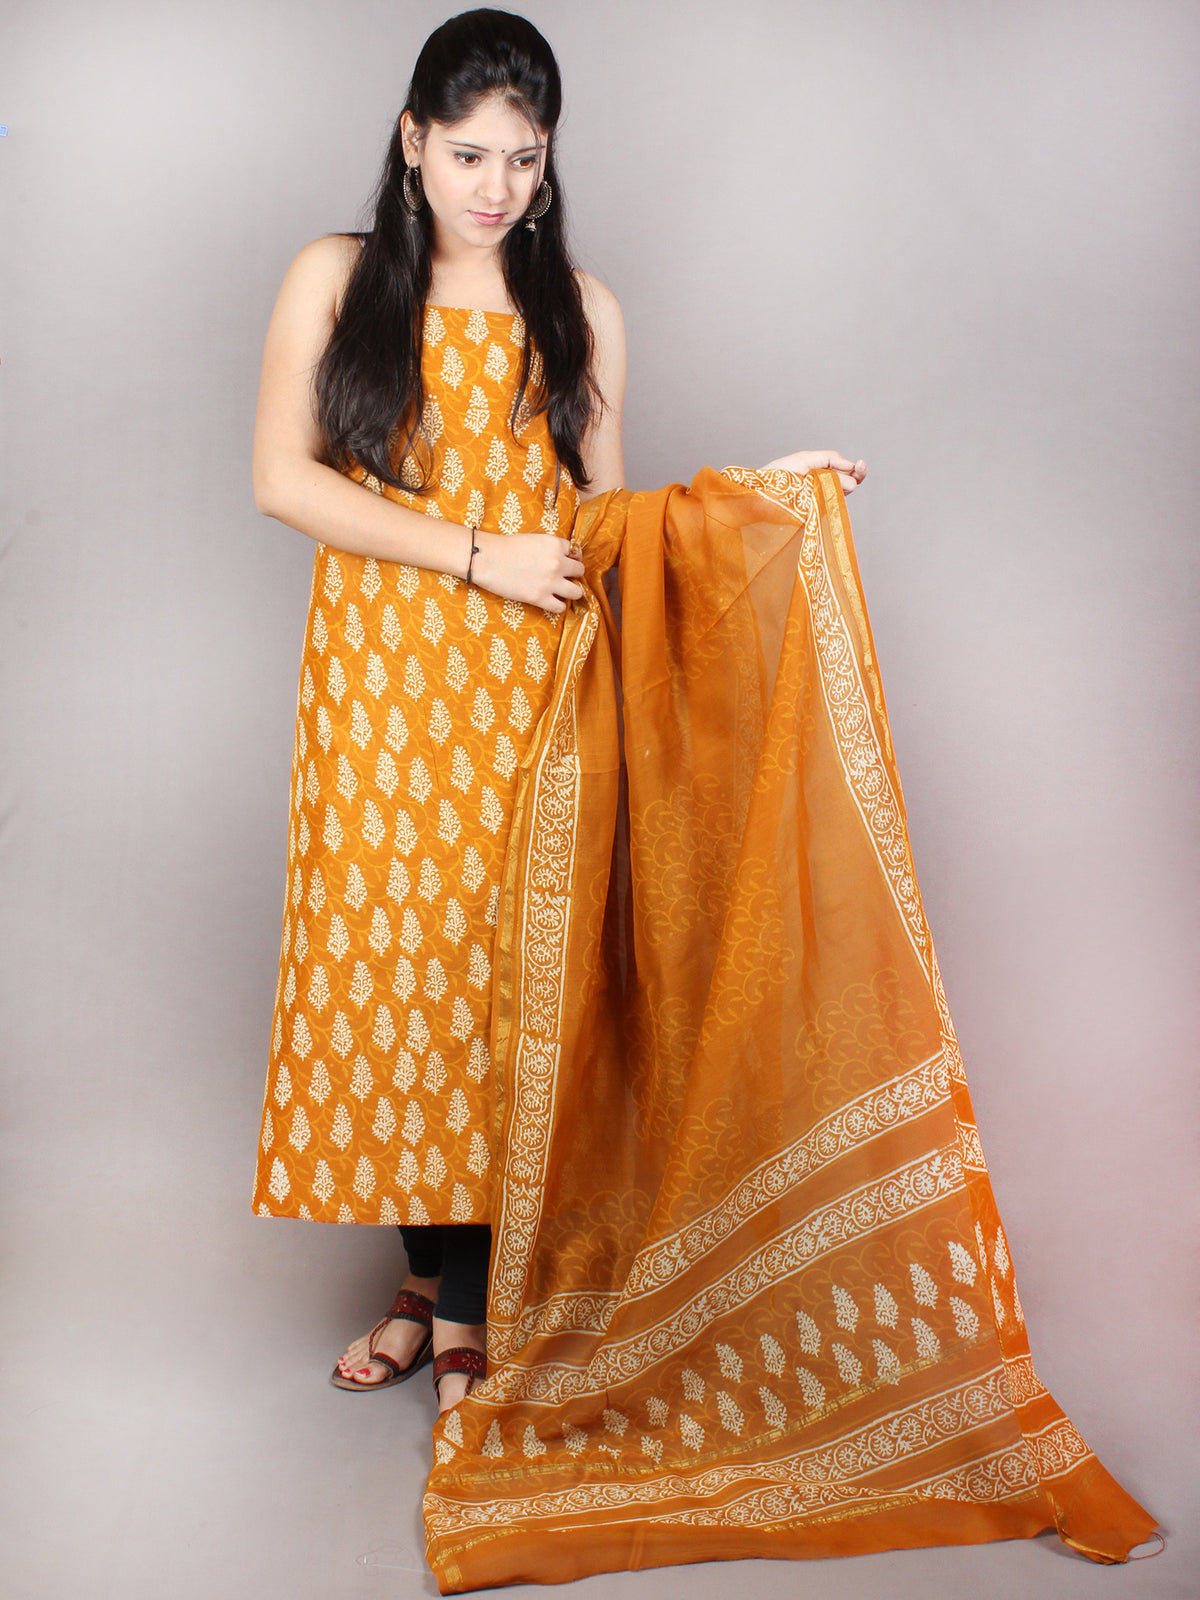 GoldenRod Yellow Hand Block Printed Chanderi Kurta-Salwar Fabric With Chanderi Dupatta - S1628069